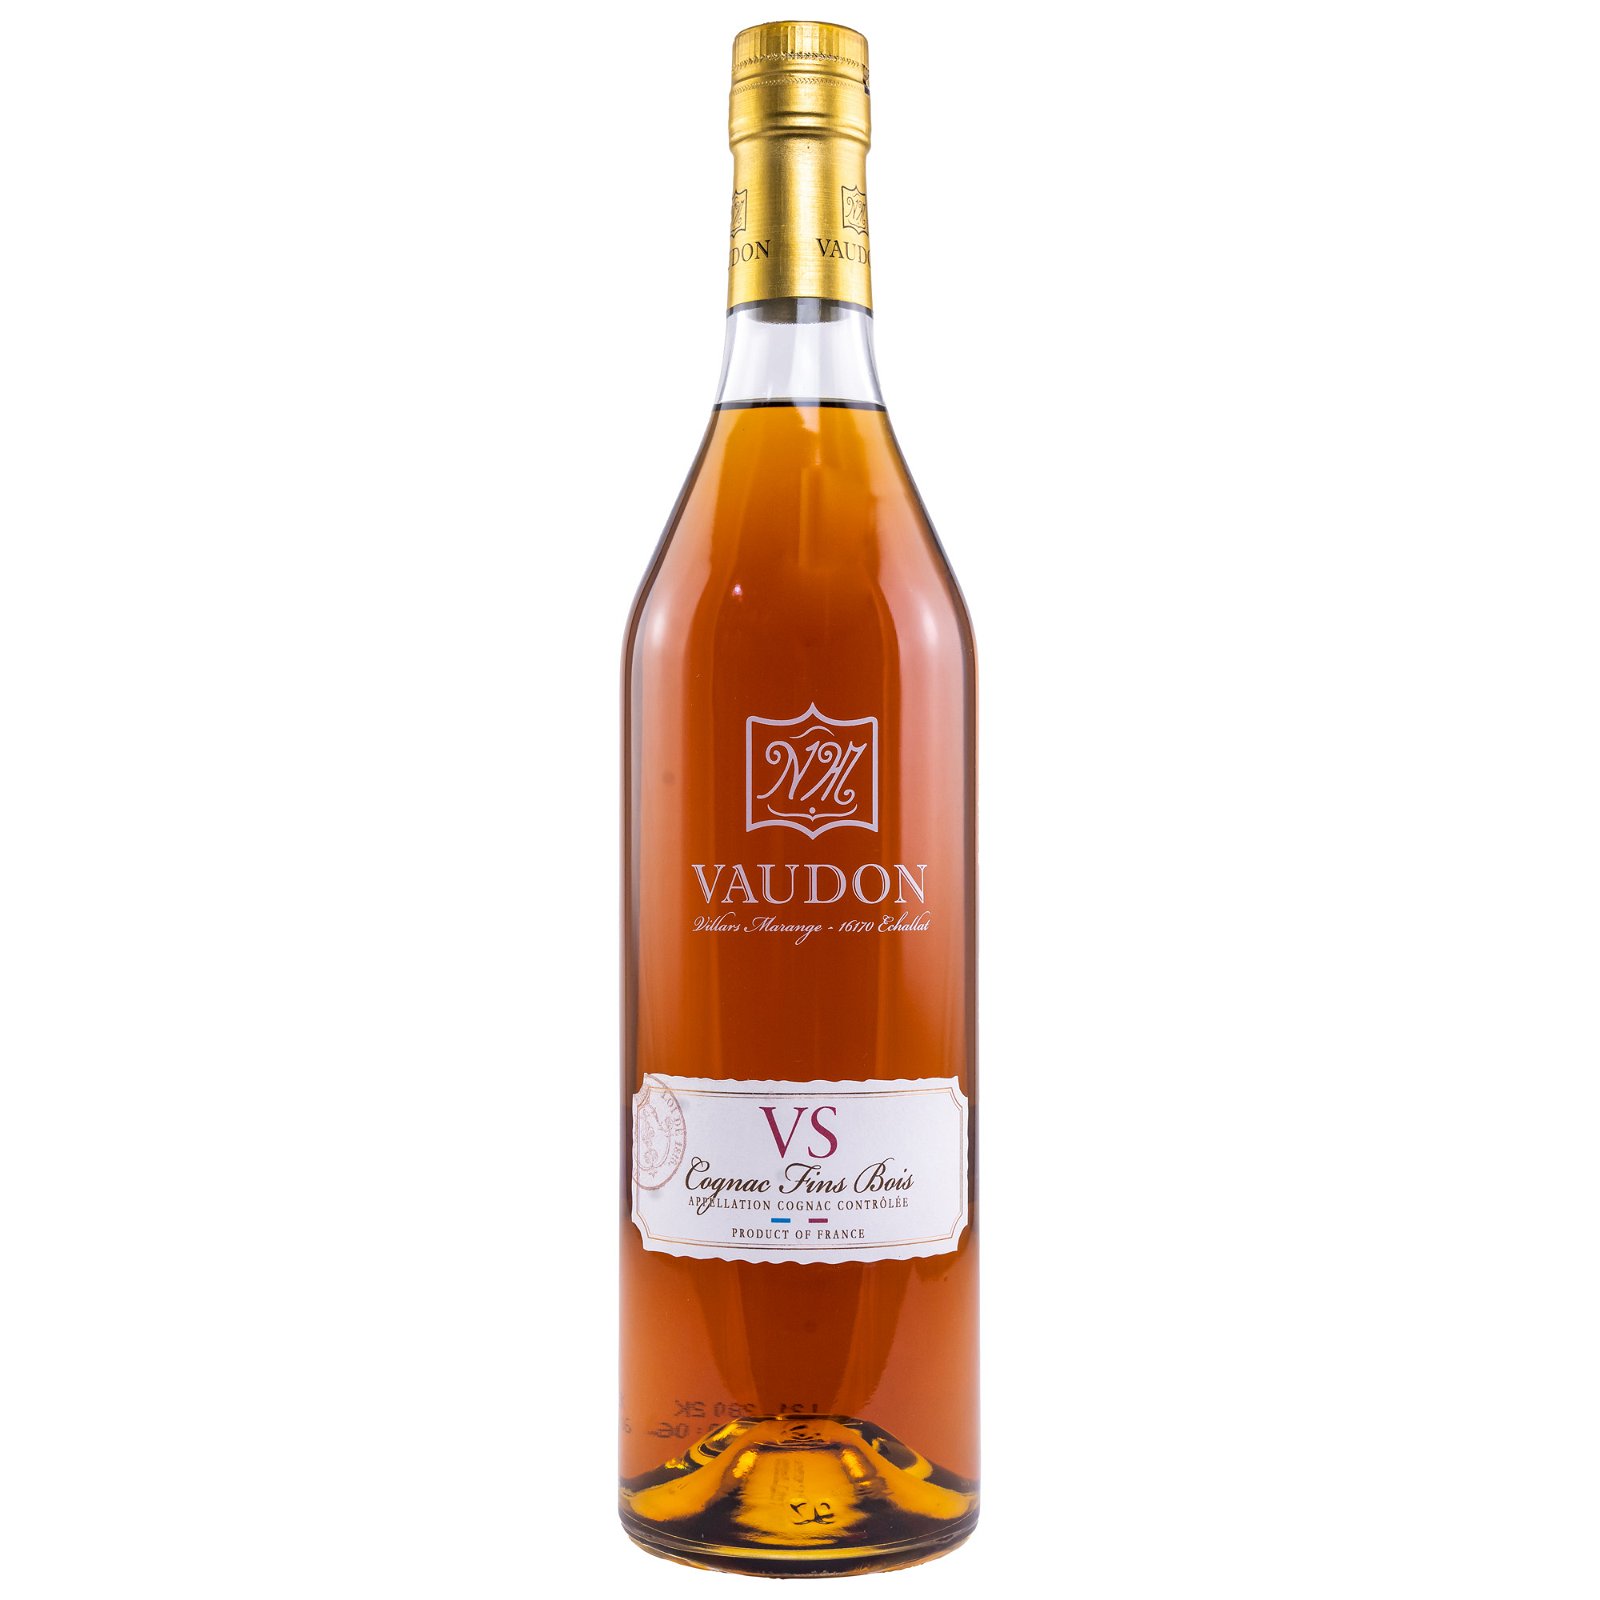 Vaudon VS Cognac Fins Bois